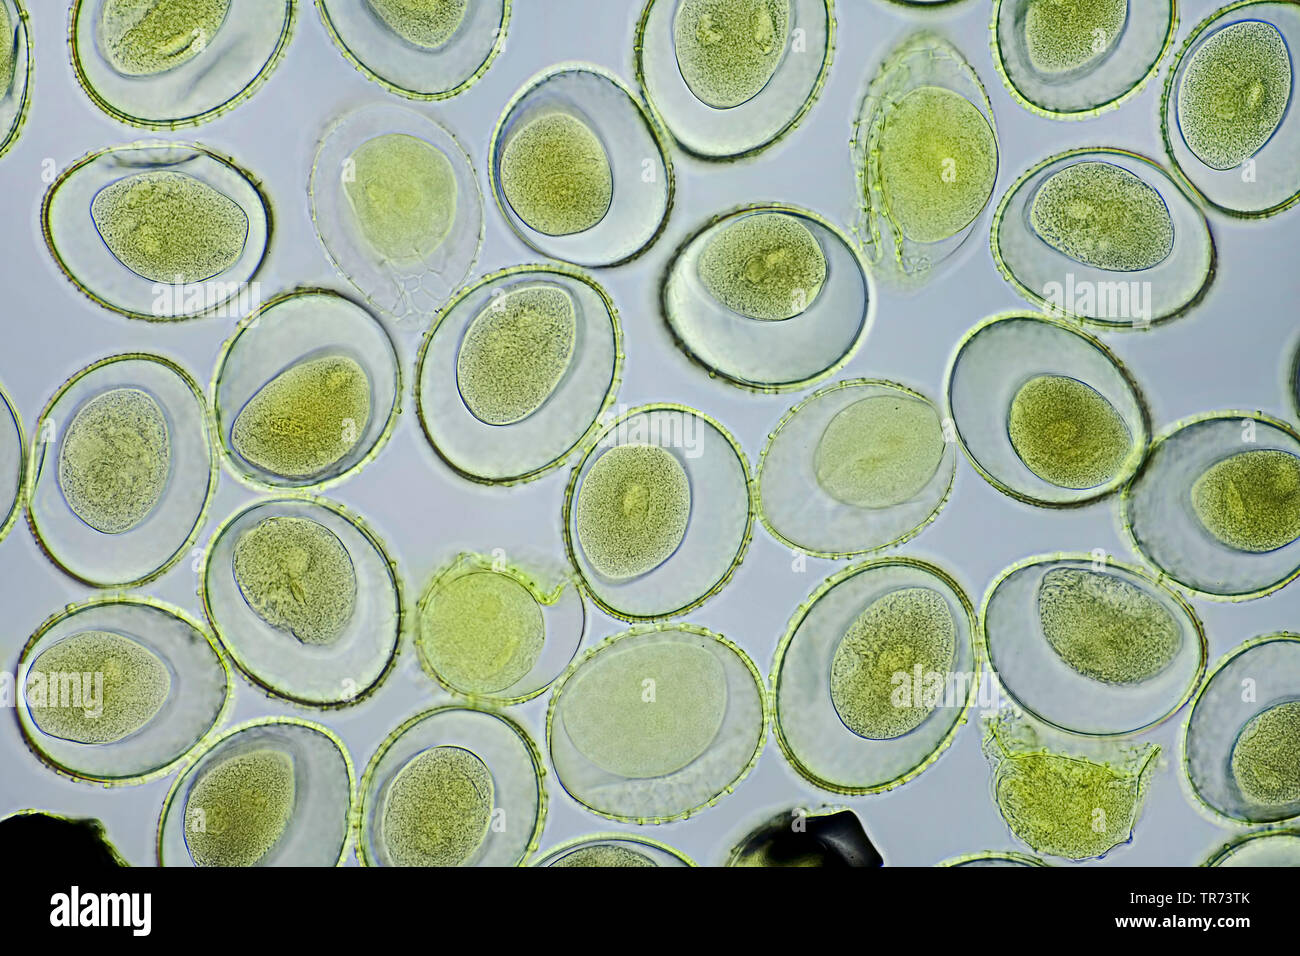 Lily (Lilium spec.), le pollen d'un lis, d'un microscope à contraste de phase, x 100, Allemagne Banque D'Images